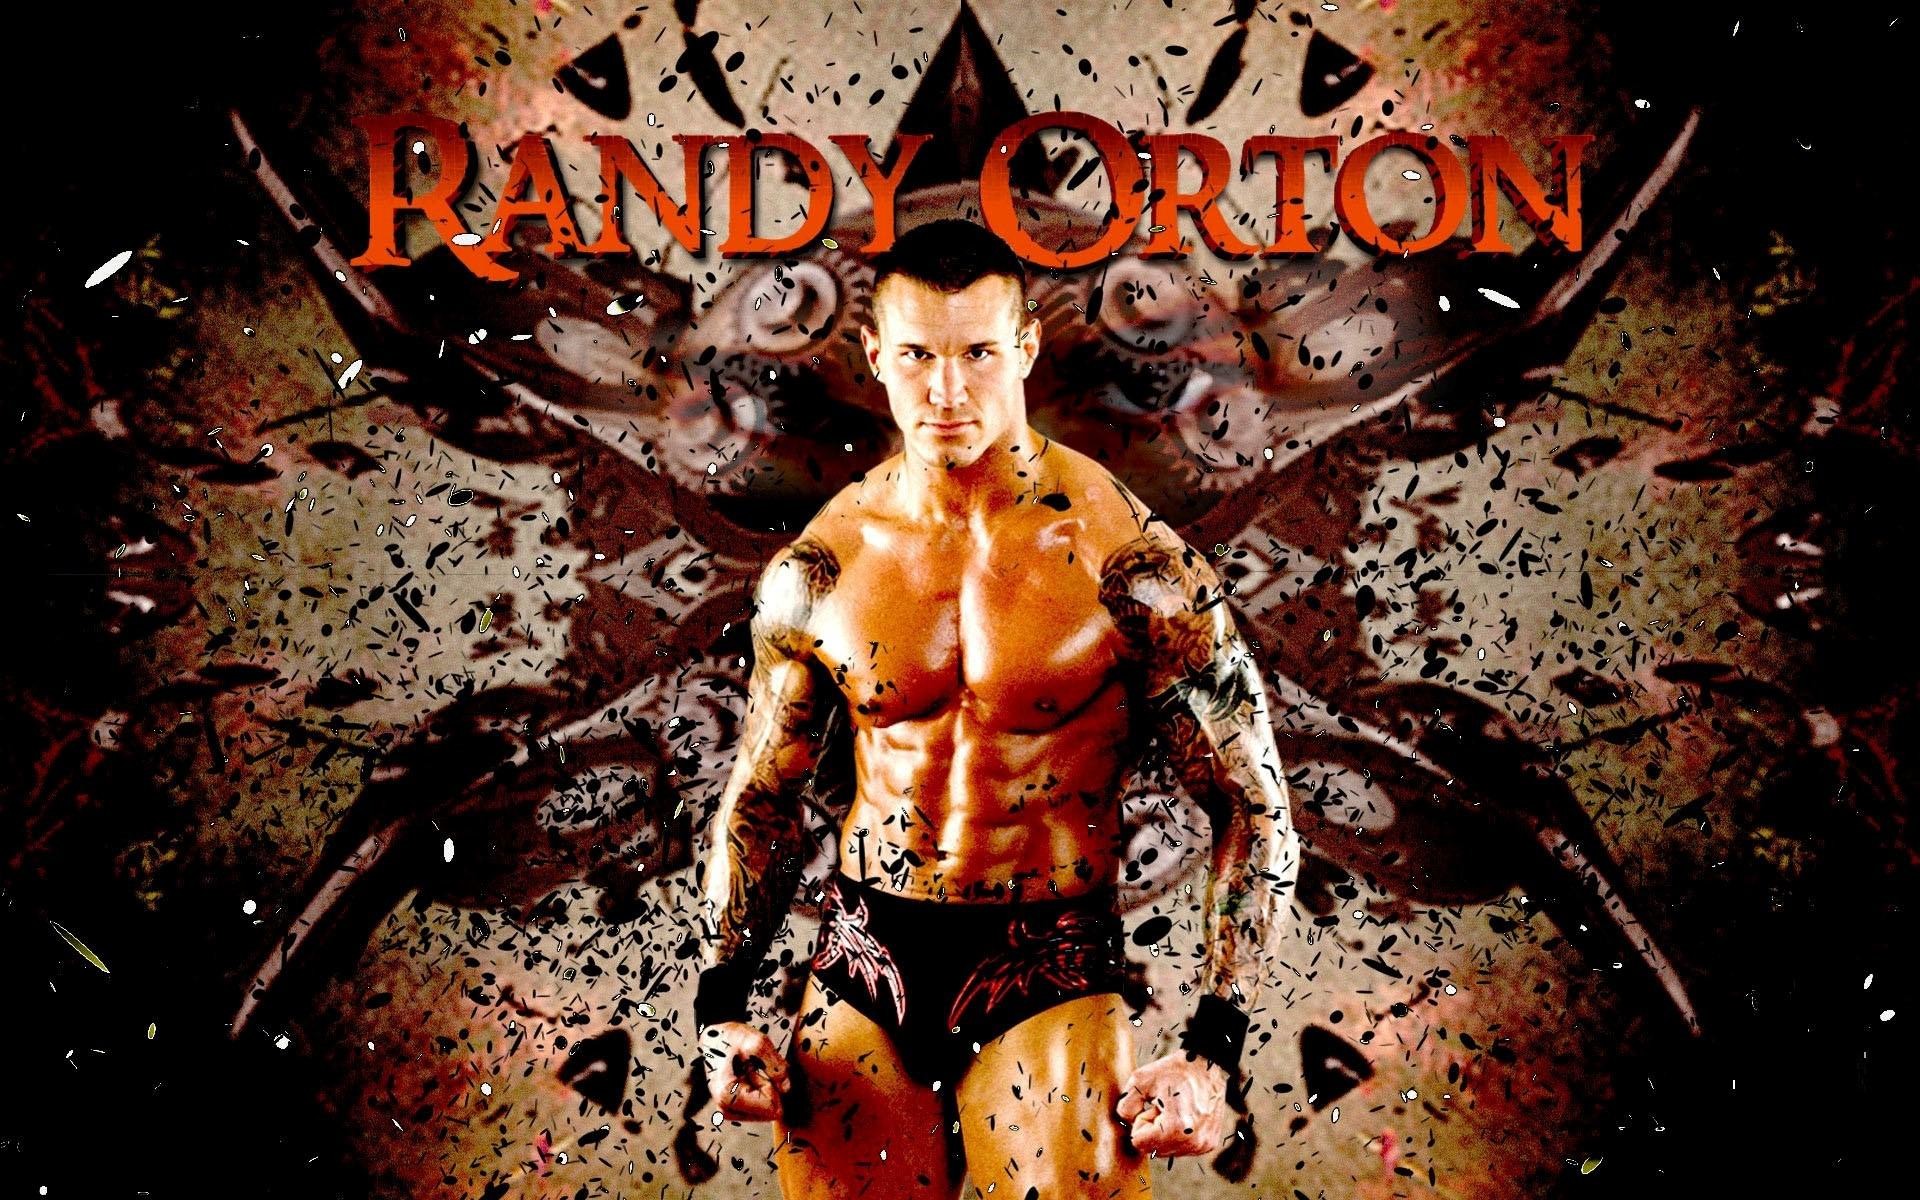 1920x1200 Randy Orton Wallpaper WWE Photos 1920Ã1200 WWE Randy Orton Wallpapers (62  Wallpapers)